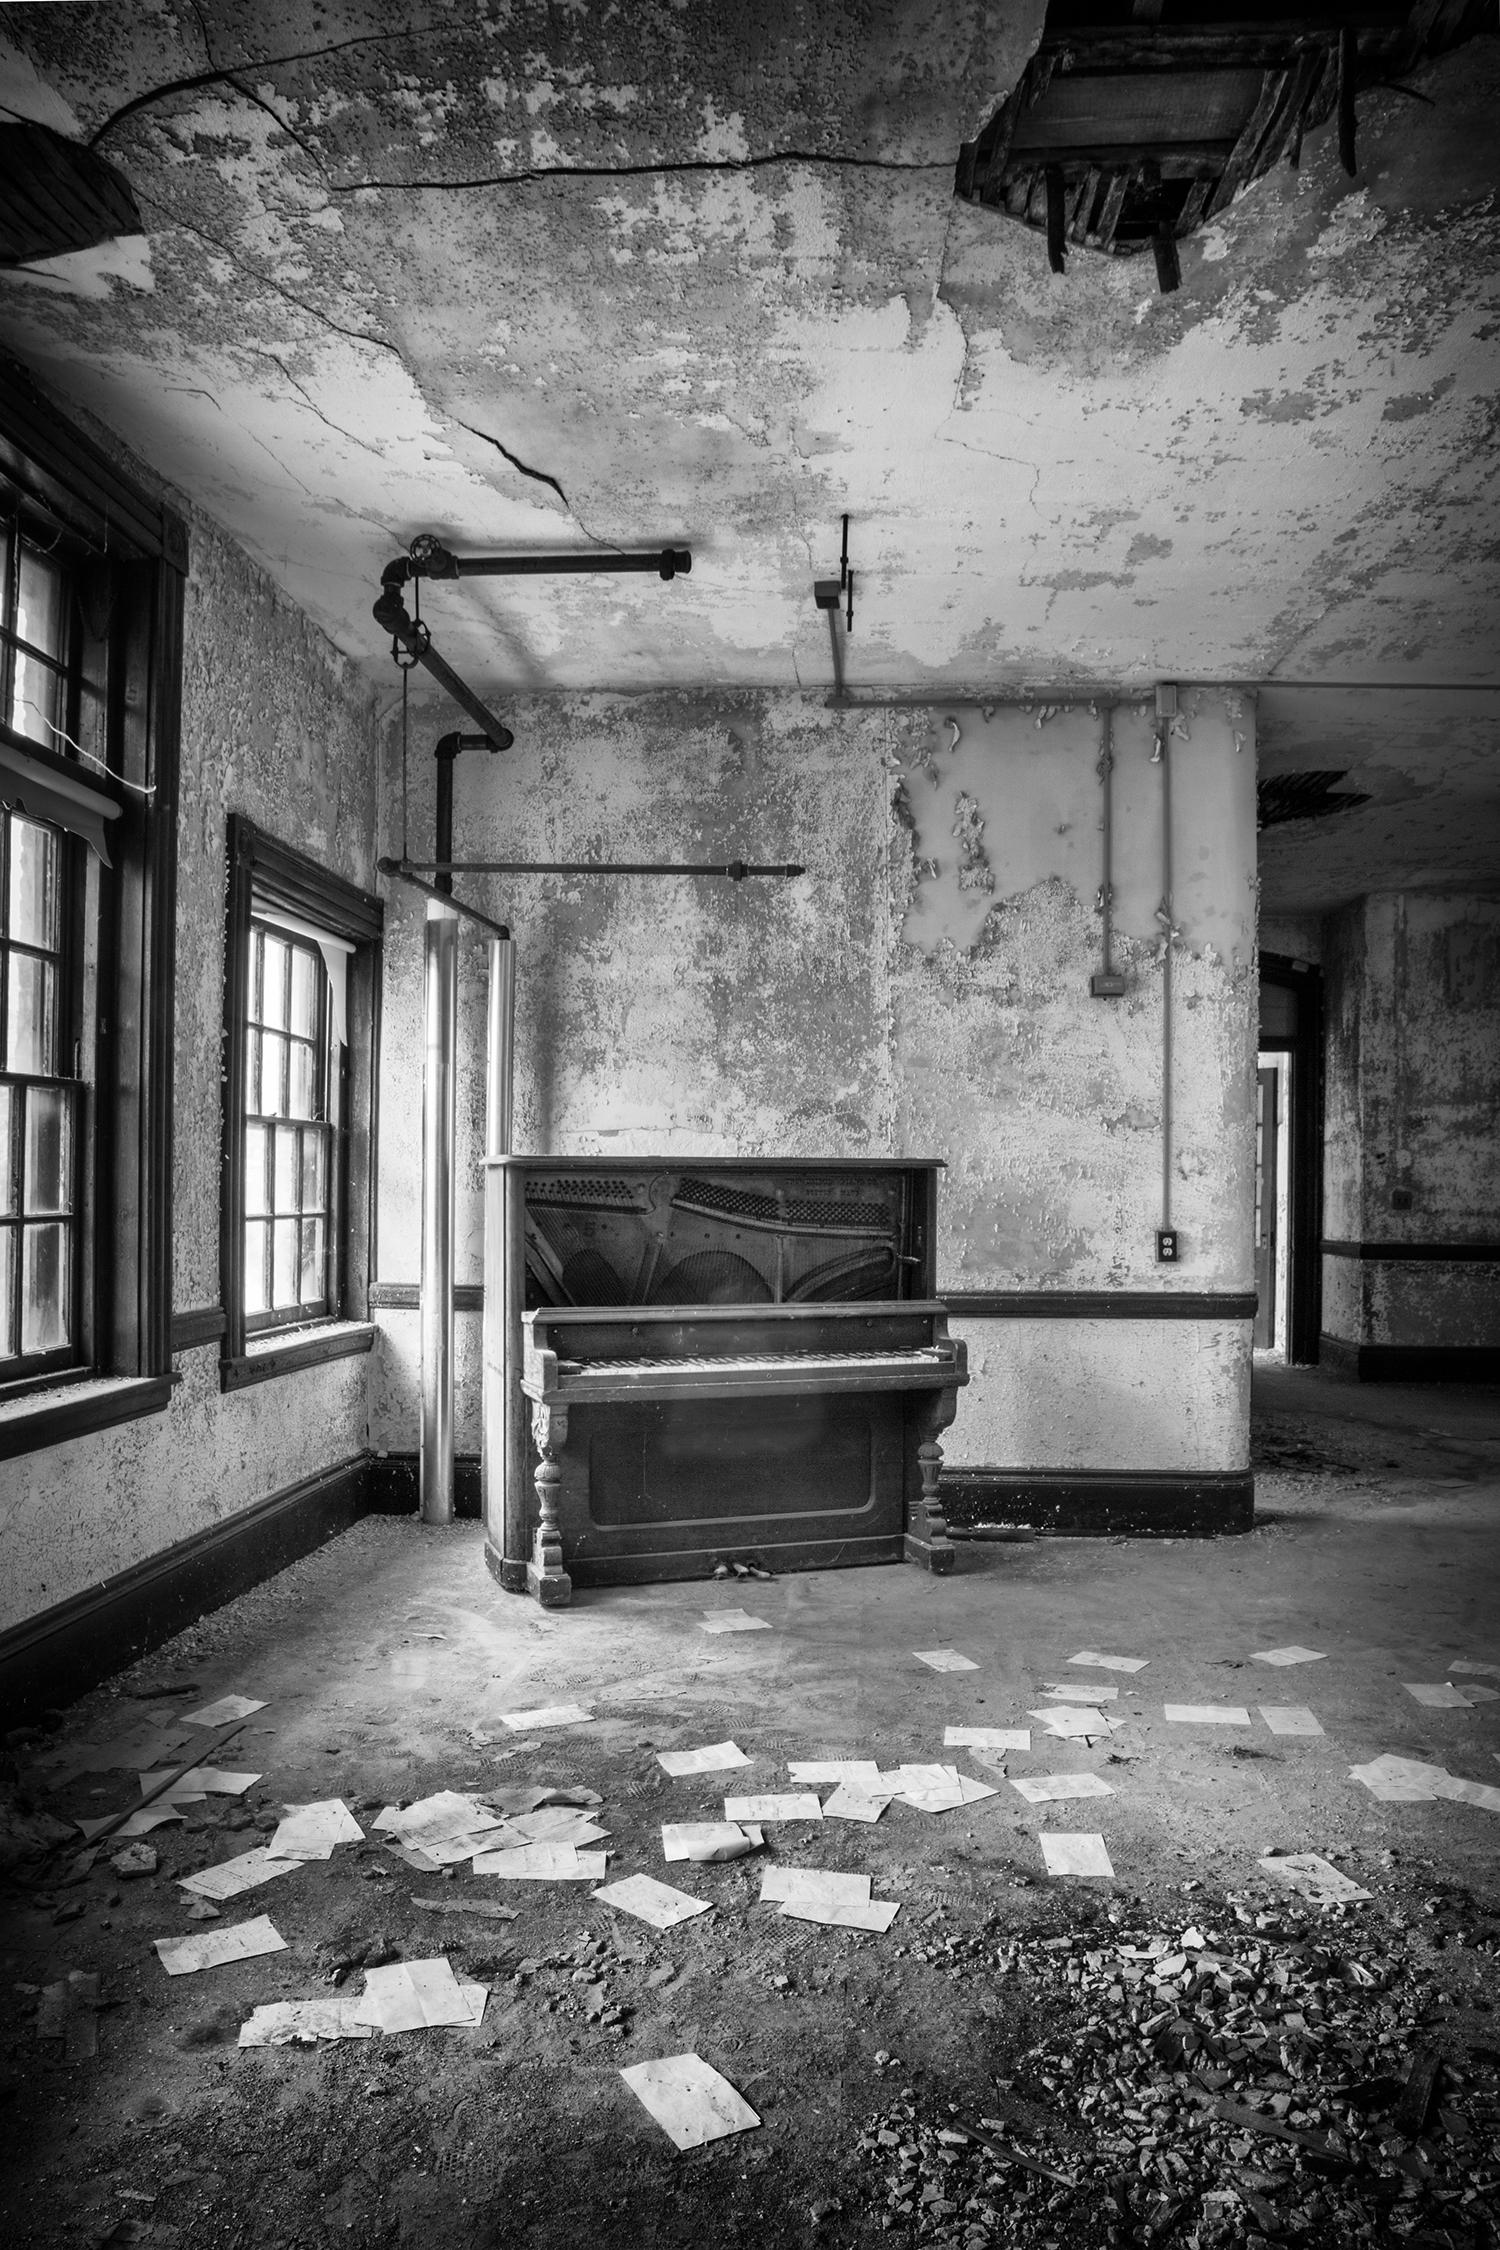 Rebecca Skinner Black and White Photograph - "Unorganized", contemporary, piano, black, white, interior, photograph